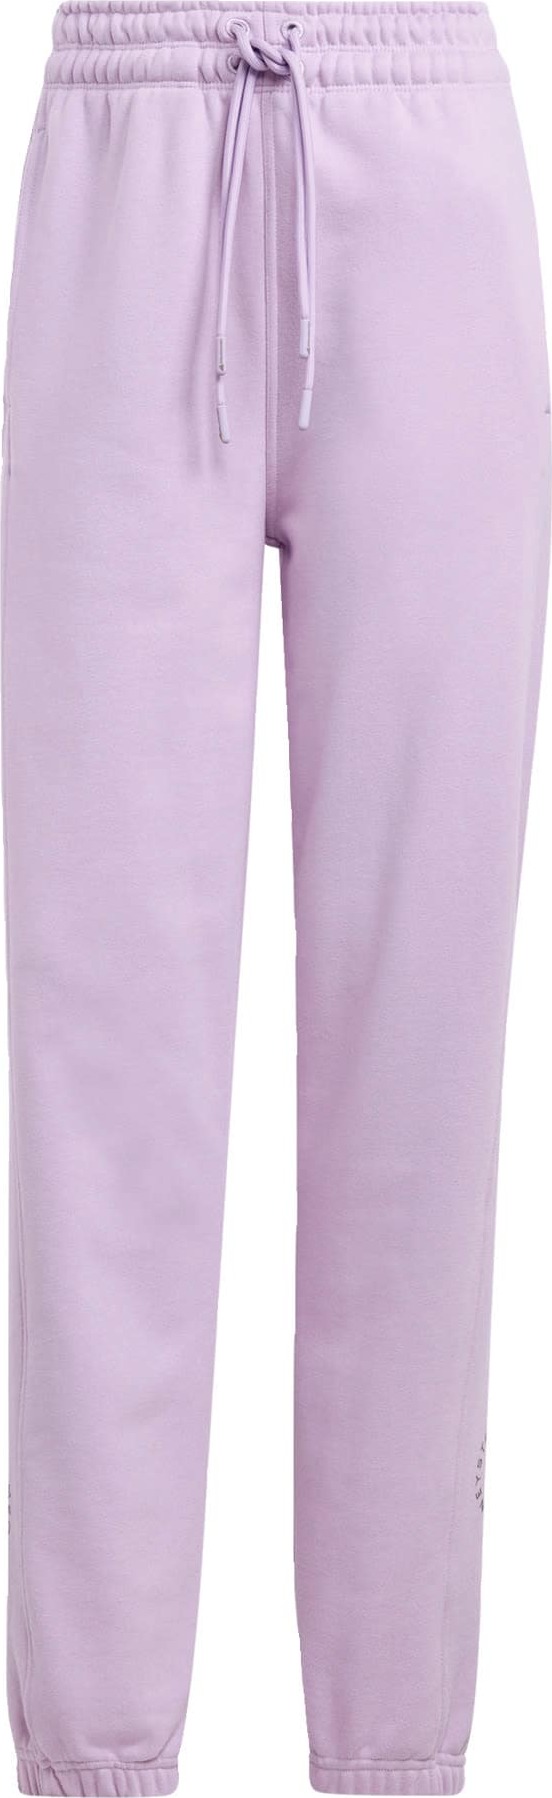 Sportovní kalhoty adidas by stella mccartney šedá / fialová